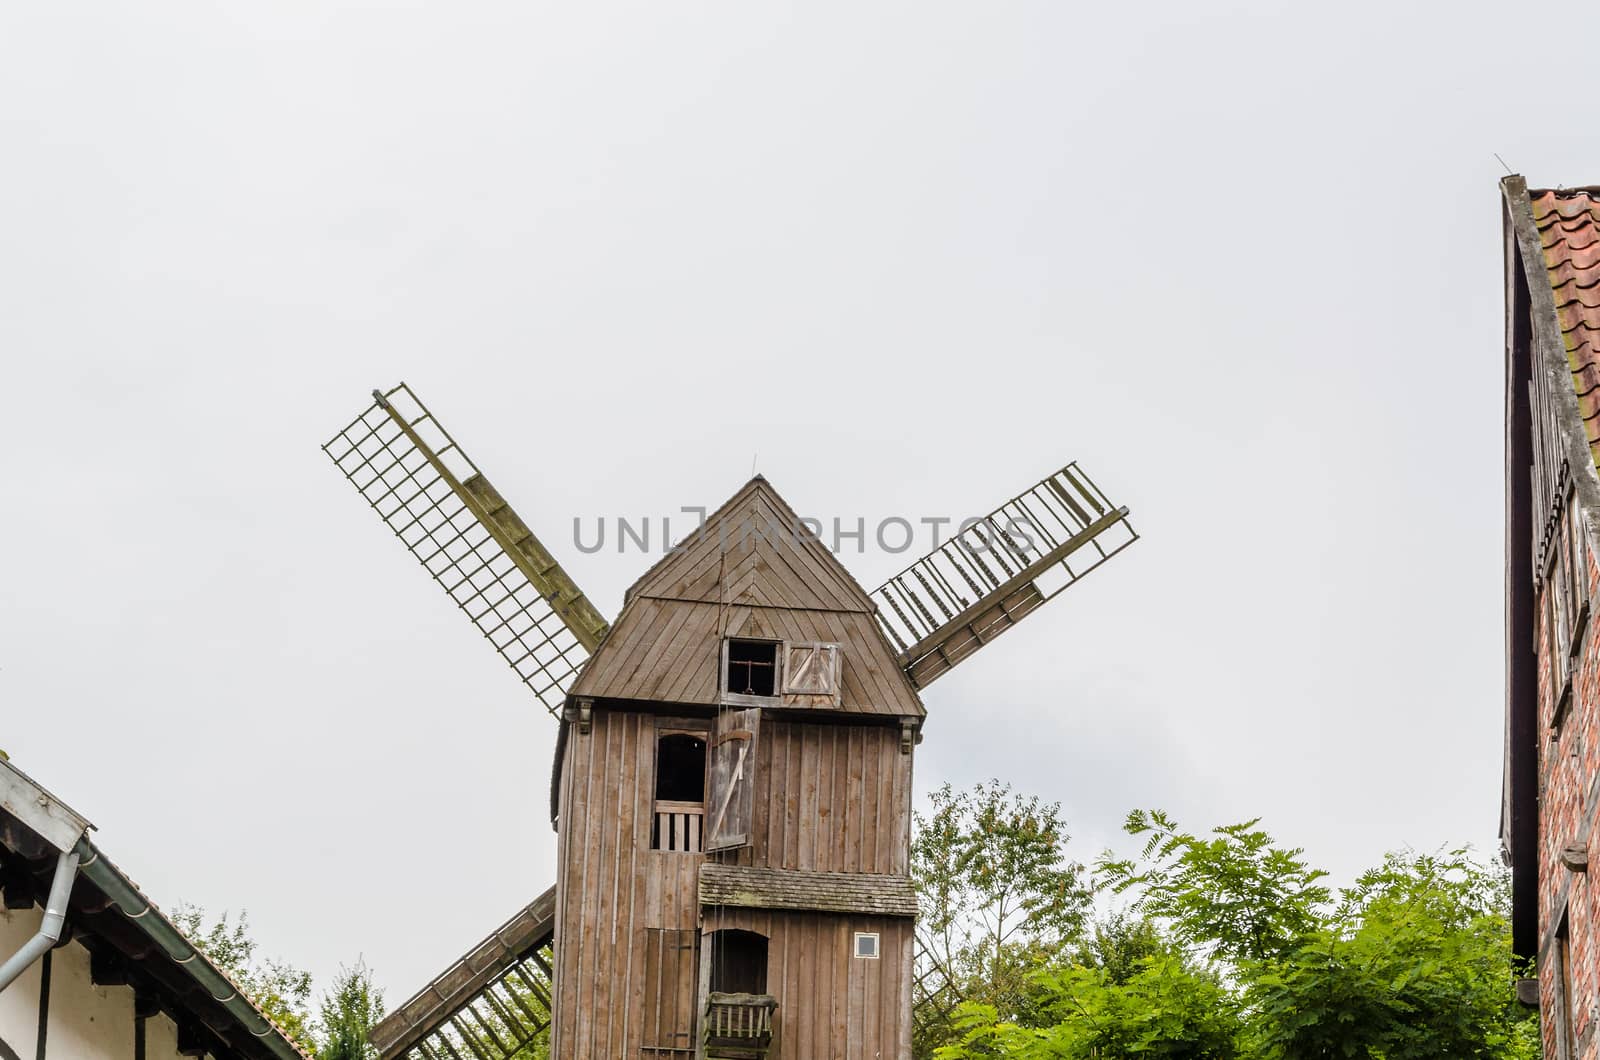 Dutch Windmill by JFsPic